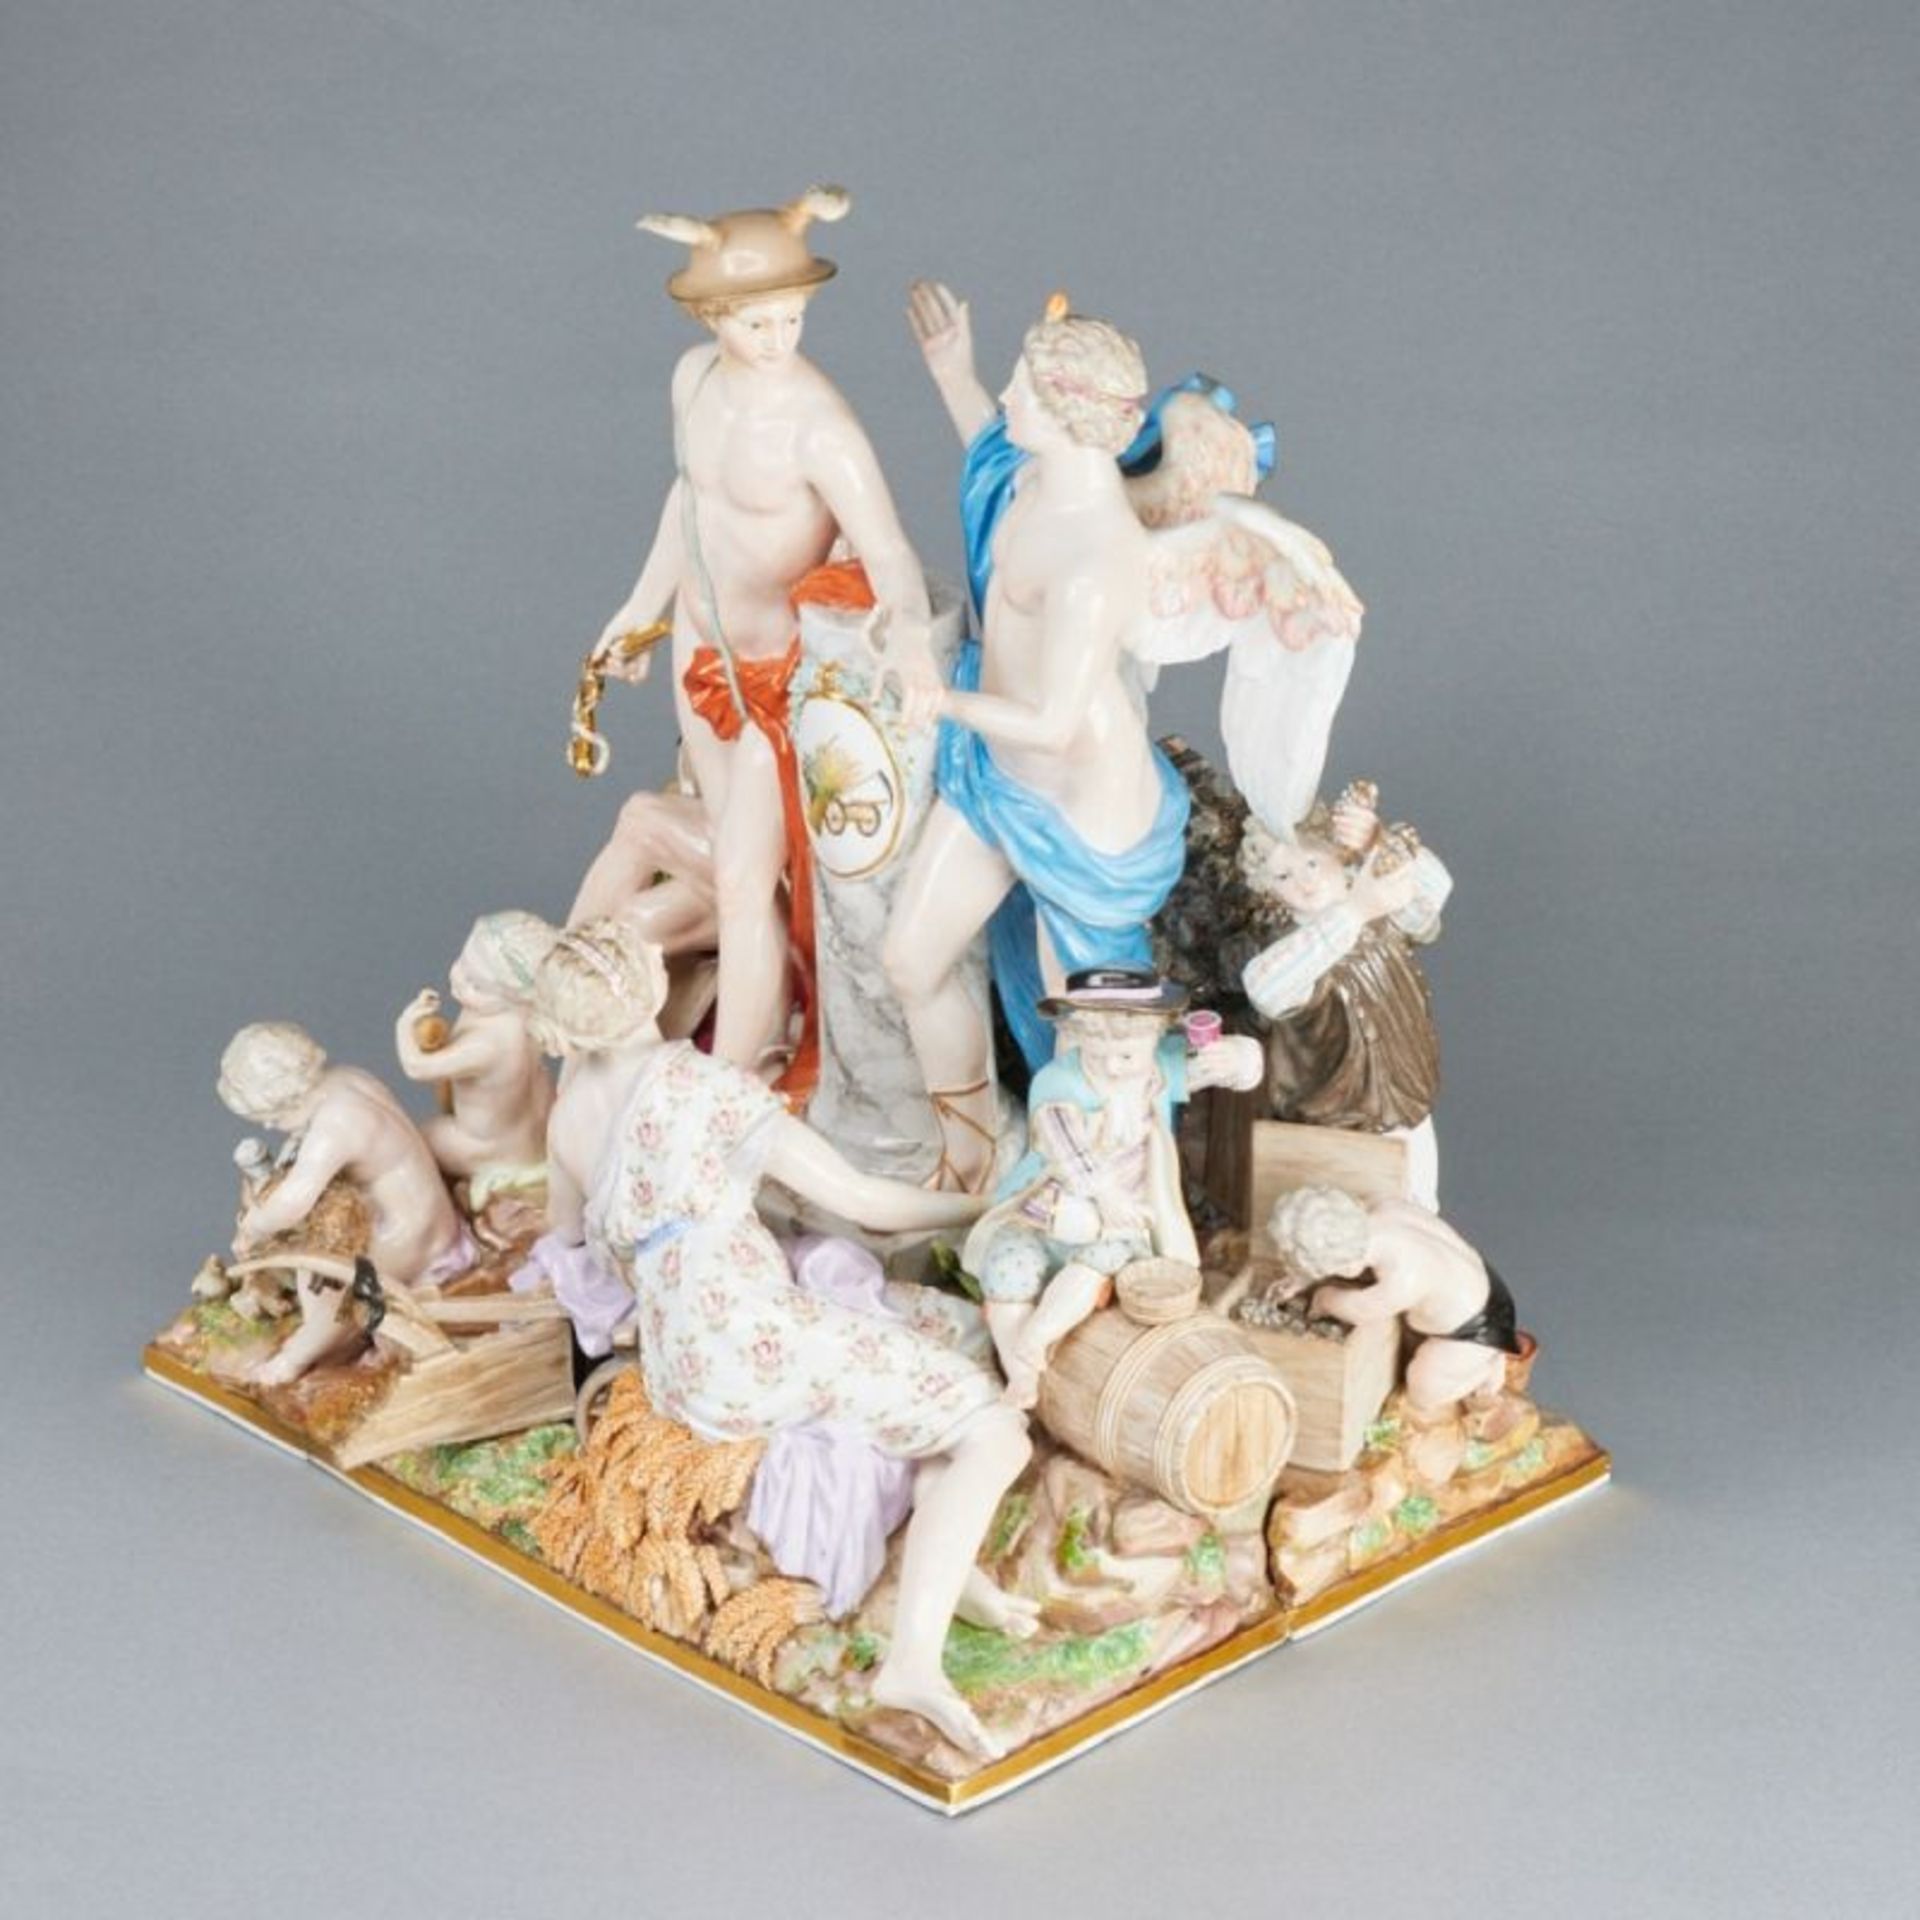 Außergewöhnliche Figurengruppe als Allegorie - Der Handel. Meissen um 1850. - Bild 2 aus 4